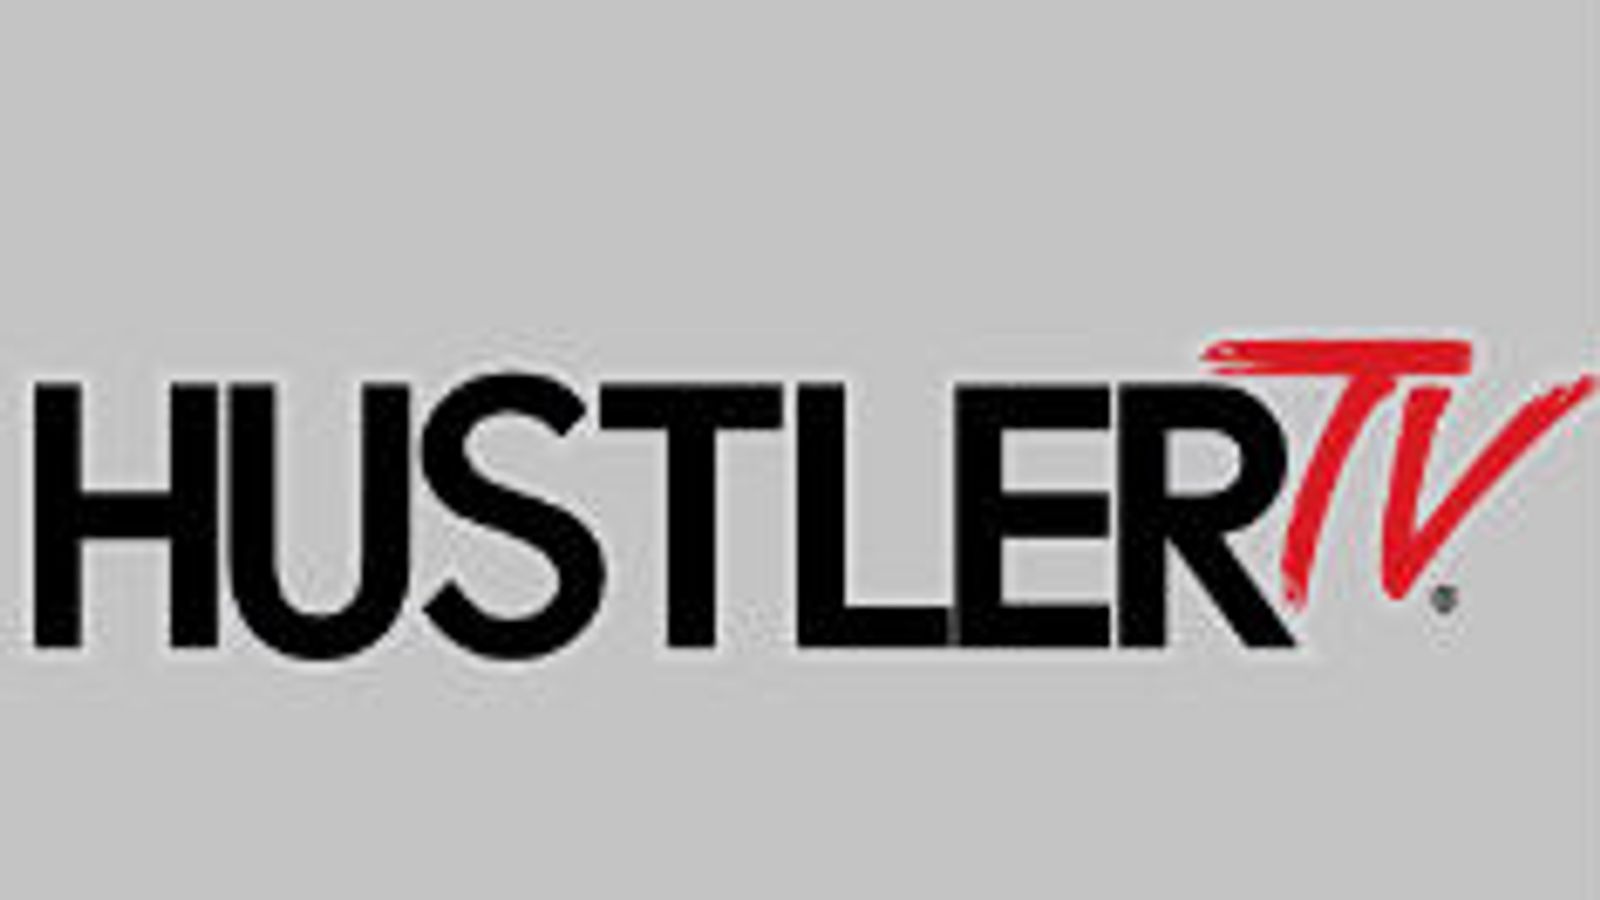 Hustler TV.